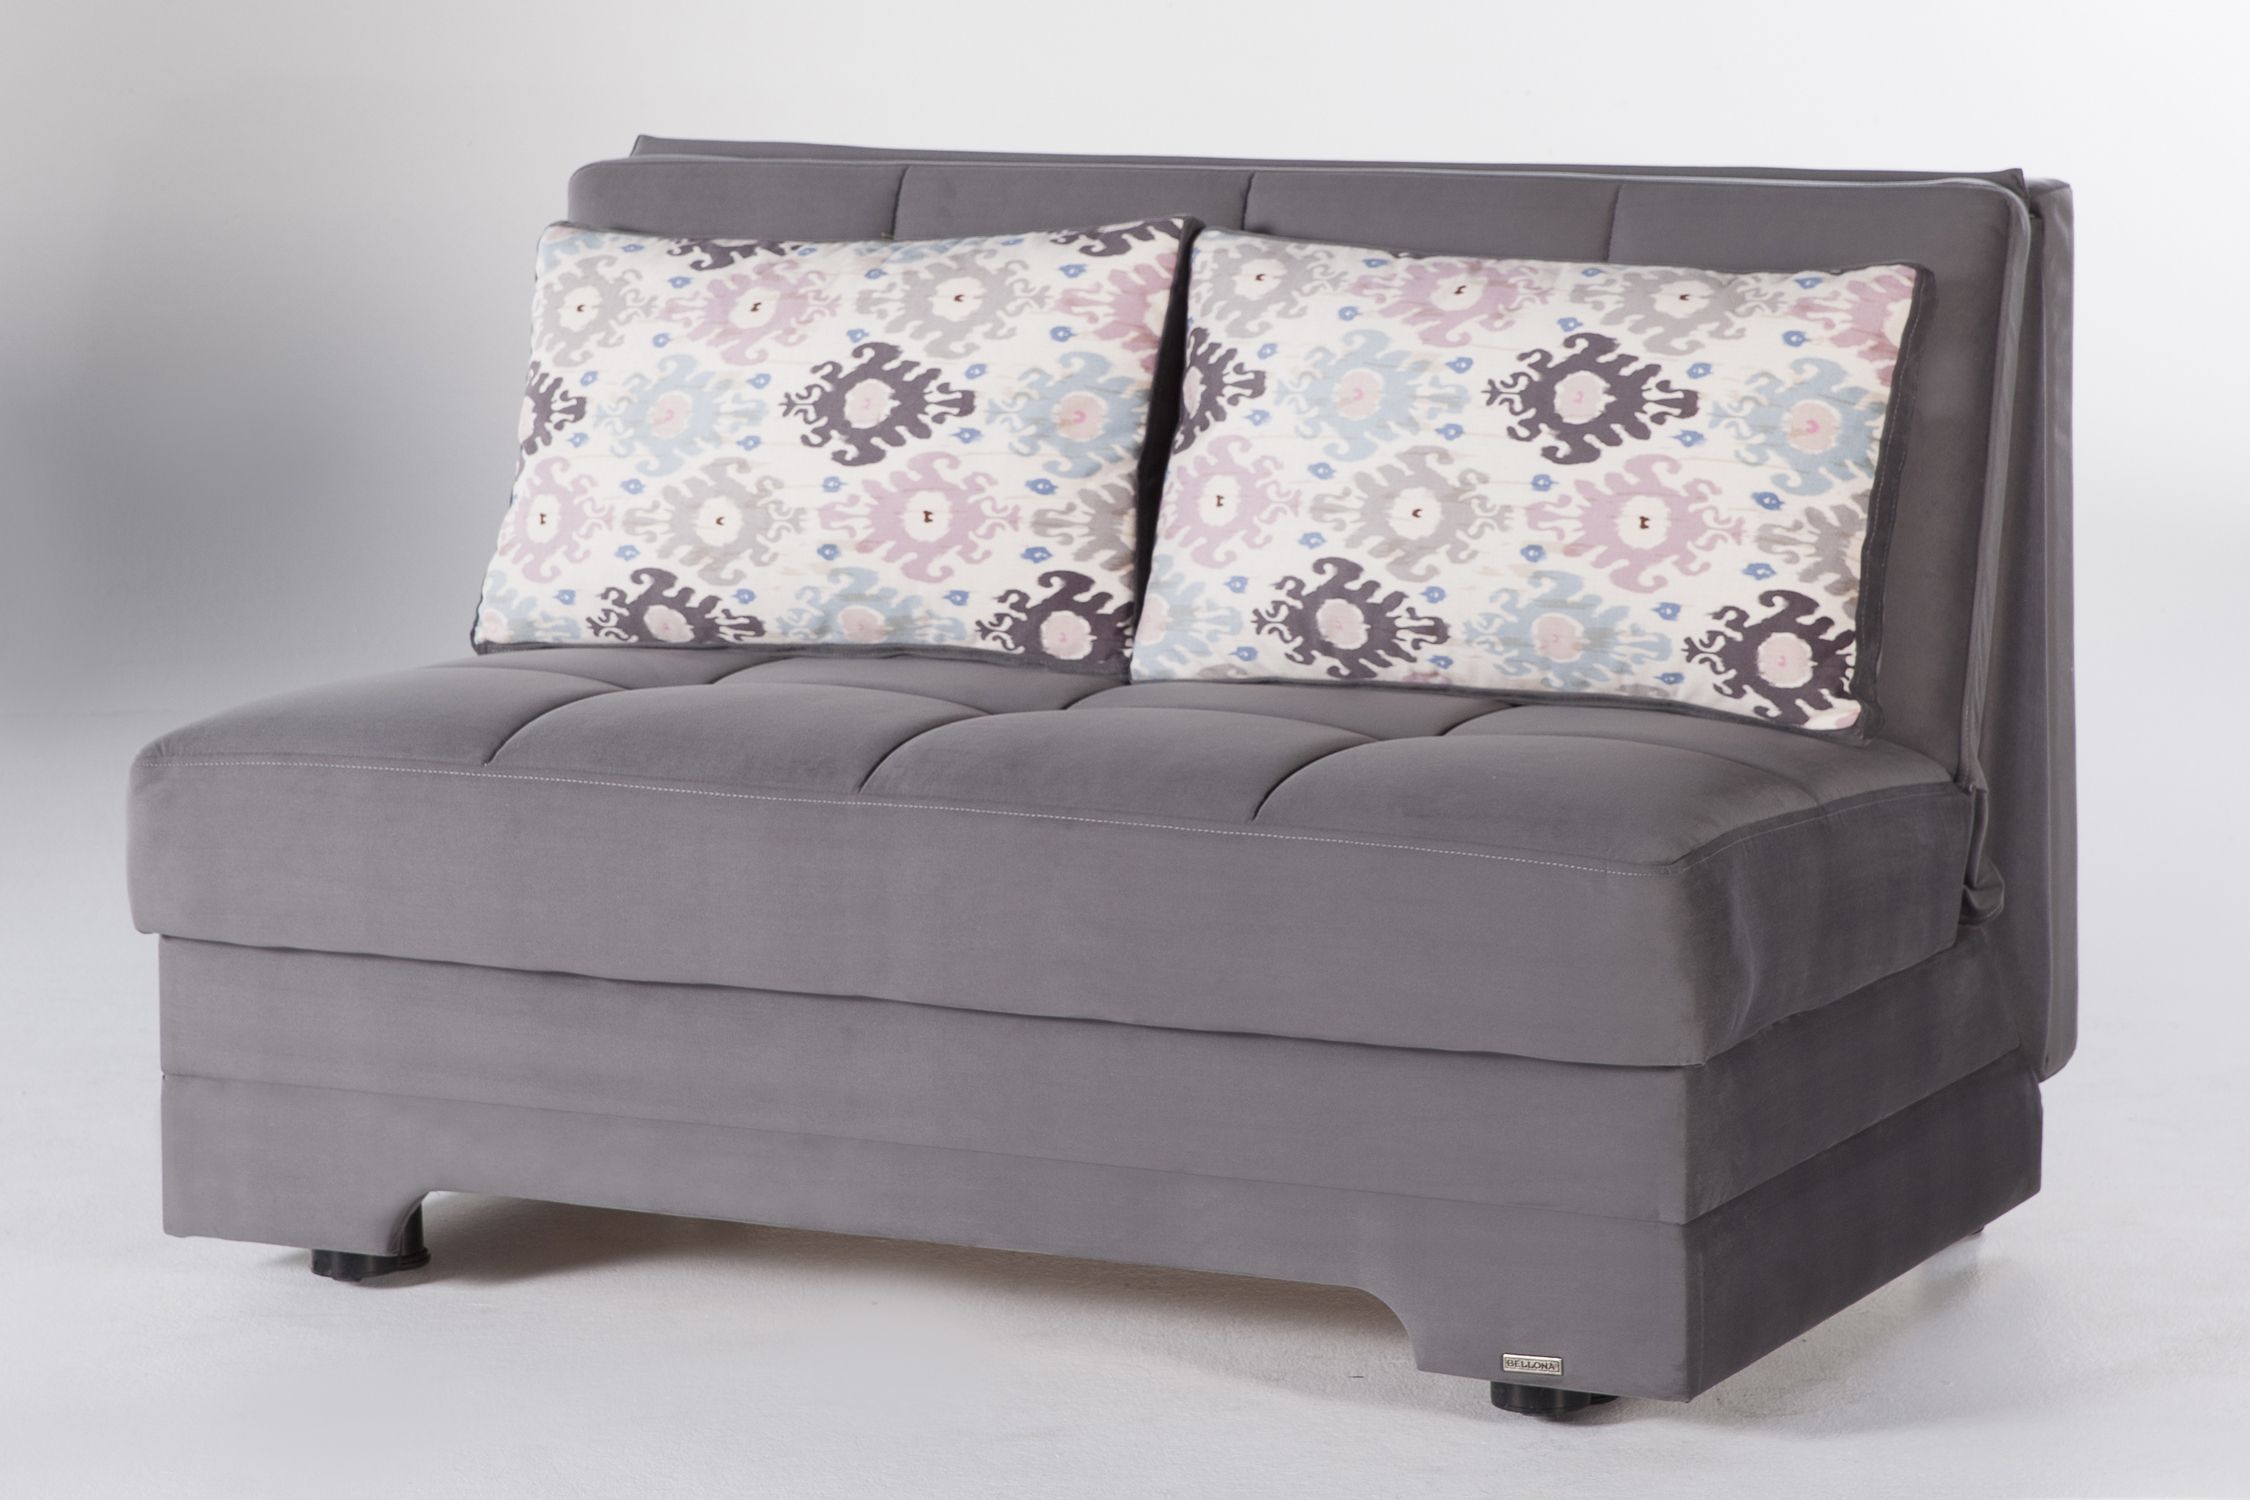 Twist Love Seat Sofa Sleeper In Pure Gray – Sleepworks Regarding Convertible Gray Loveseat Sleepers (Gallery 12 of 20)